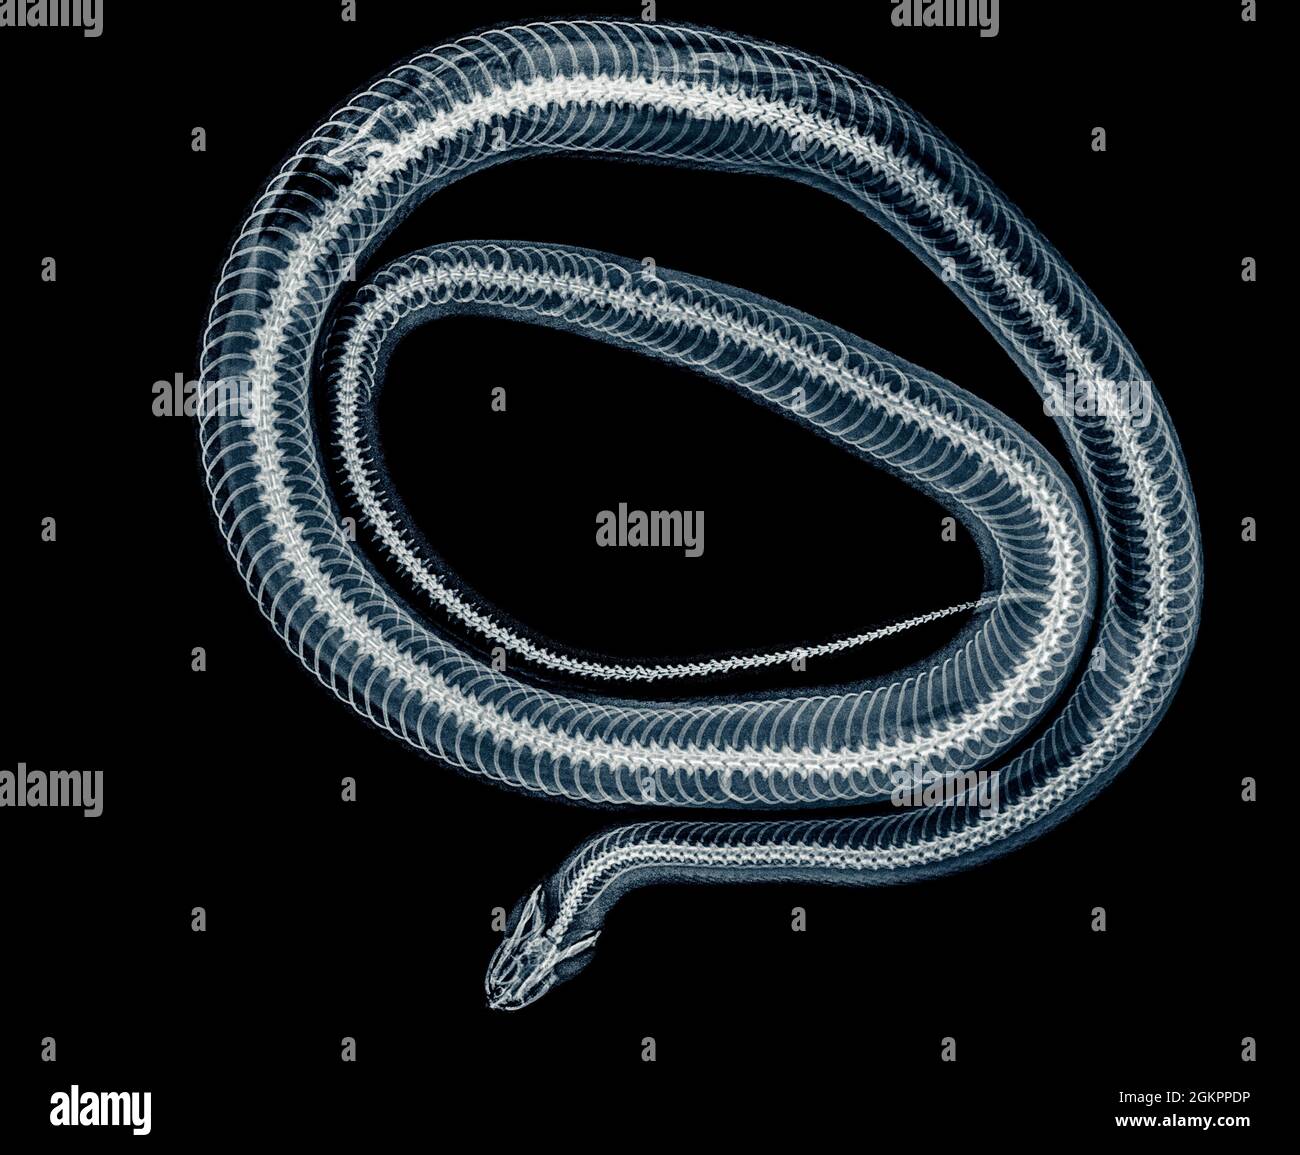 Serpent enroulé sous rayons X une souris entière peut être vu digérée sur la gauche Banque D'Images